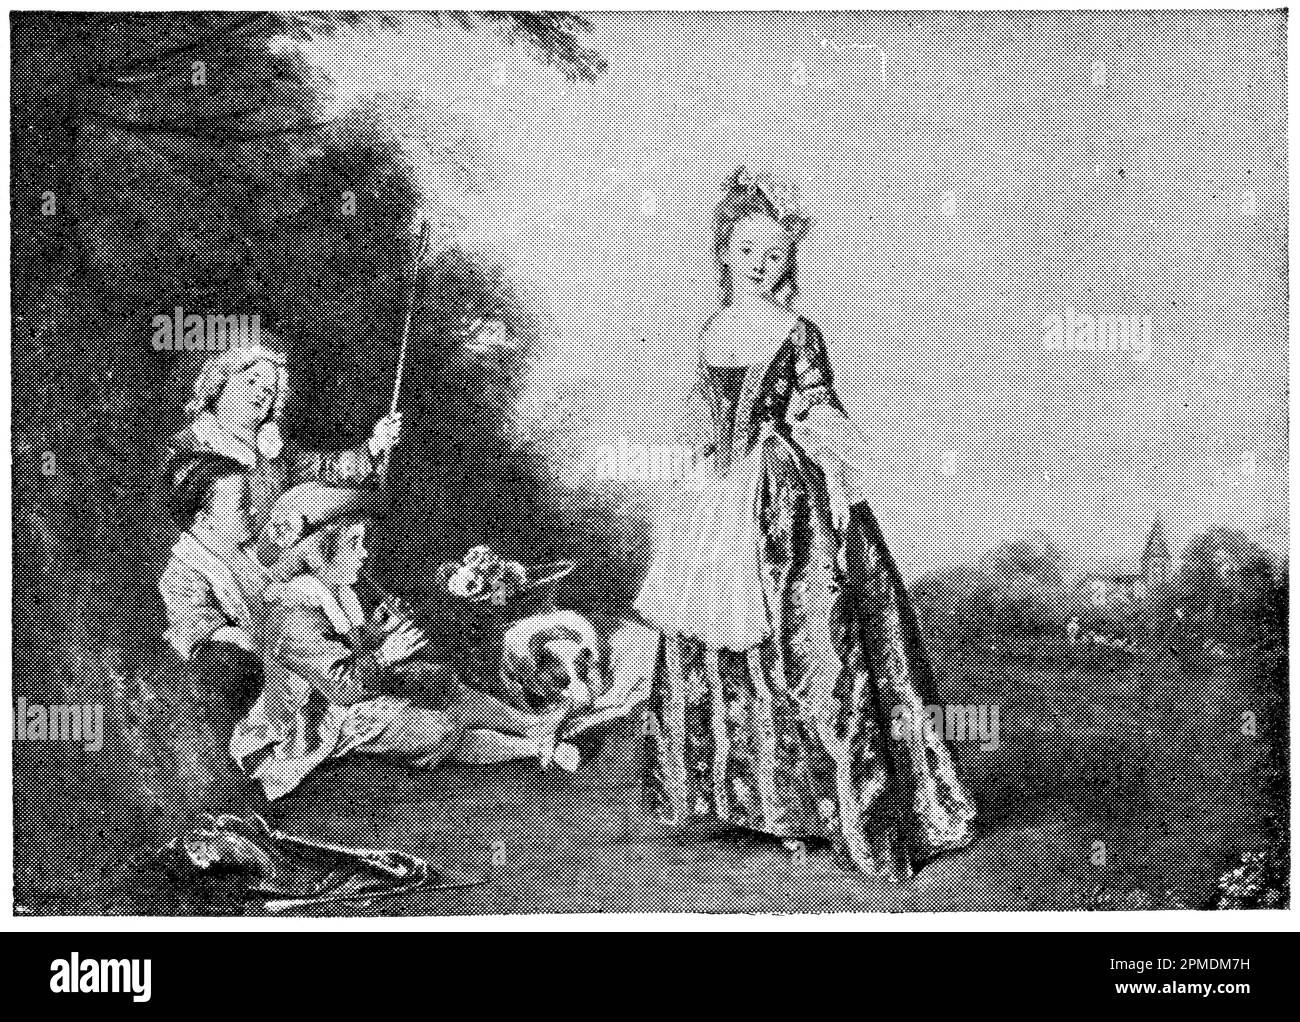 La danza di un pittore e disegnatore francese Jean-Antoine Watteau. Pubblicazione del libro 'Meyers Konversations-Lexikon', Volume 2, Lipsia, Germania, 1910 Foto Stock